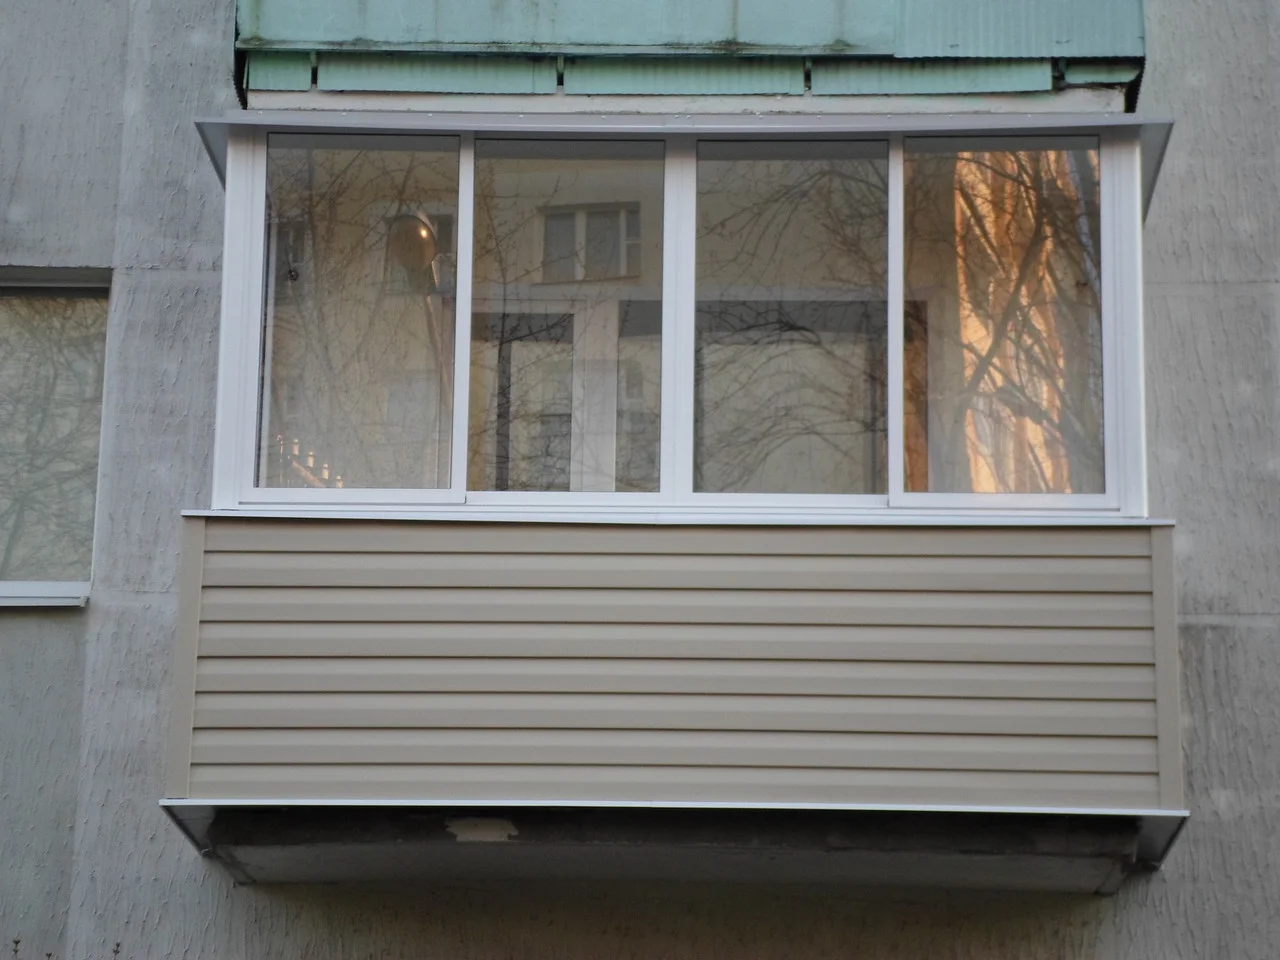 Внешняя обшивка / отделка балкона или лоджии пластиком или профлистом – московская остеклительная компания